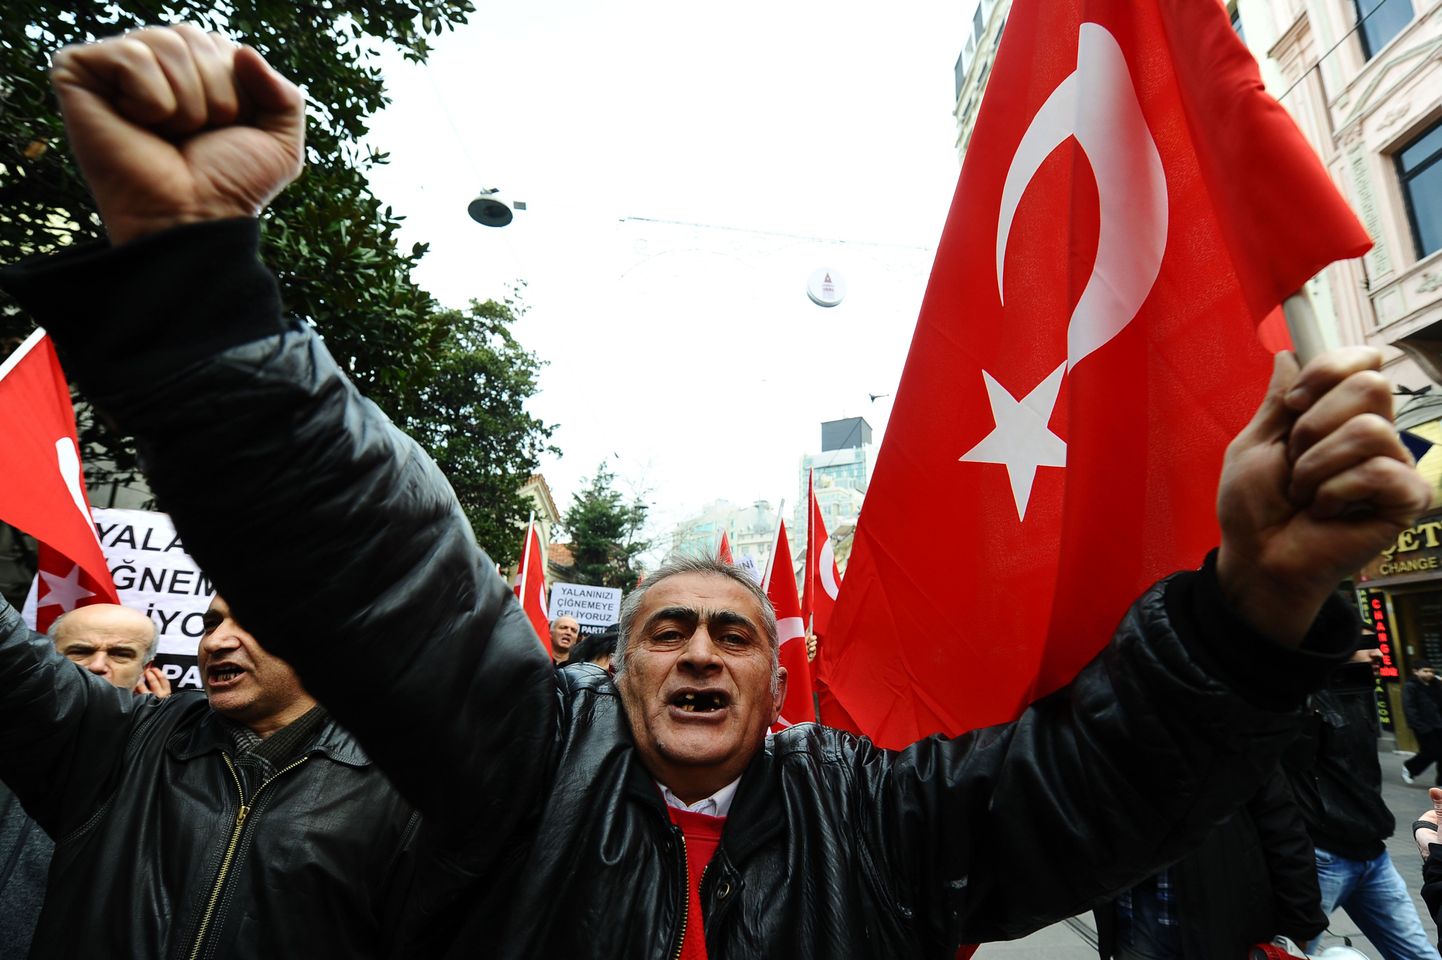 Türklane protestimas 2012. aastal Istanbulis asuva Prantsuse konsulaadi ees Prantsusmaa otsuse vastu kriminaliseerida Armeenia genotsiidi eitamine.